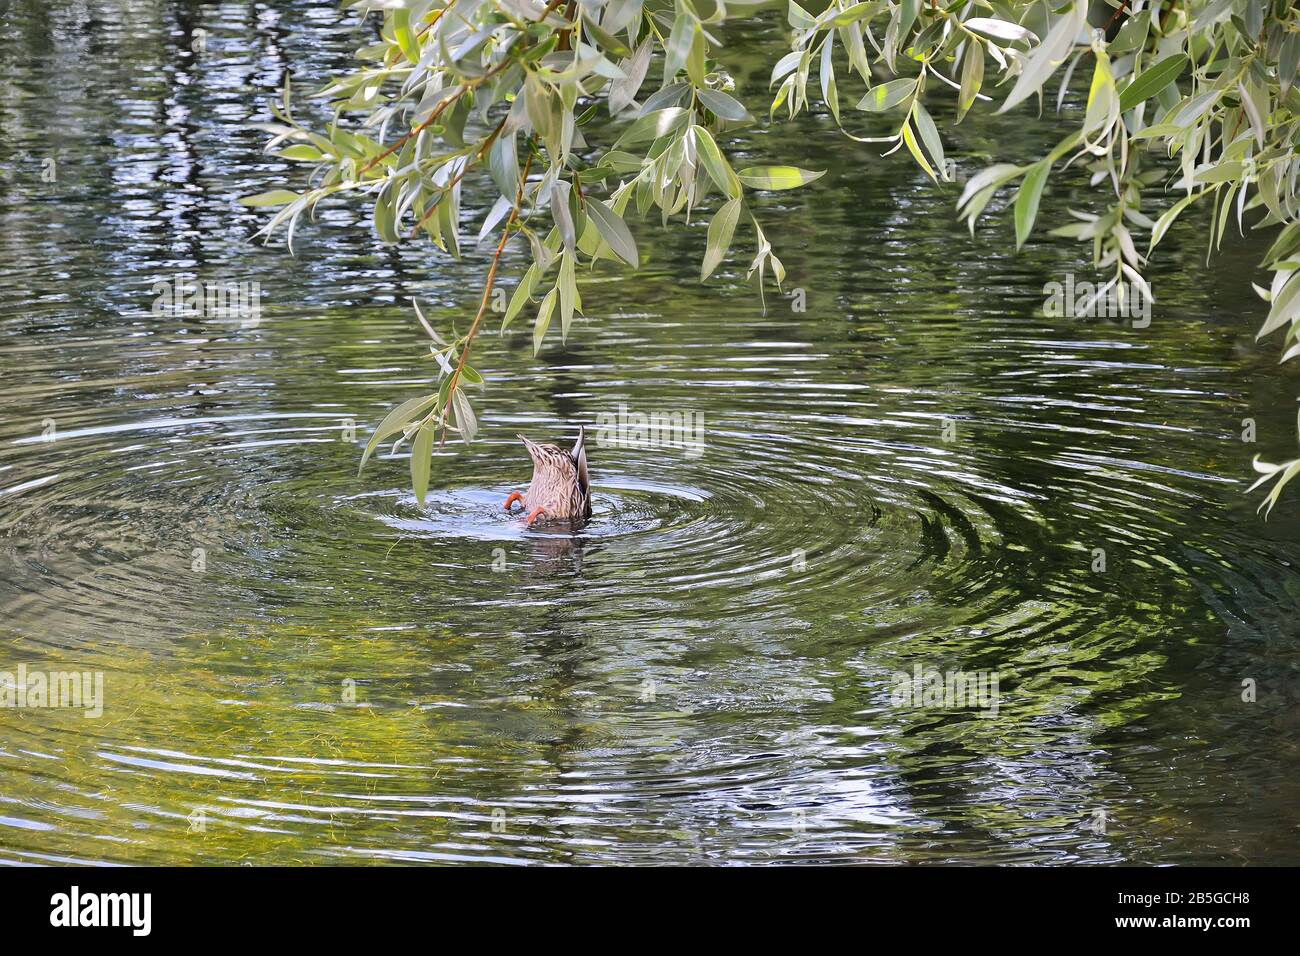 Plongée de canard malard femelle dans l'étang à la recherche de nourriture sous la branche de saule argentée. Cercles sur la surface de l'eau du lac. Notion de faune animale, ornitol Banque D'Images